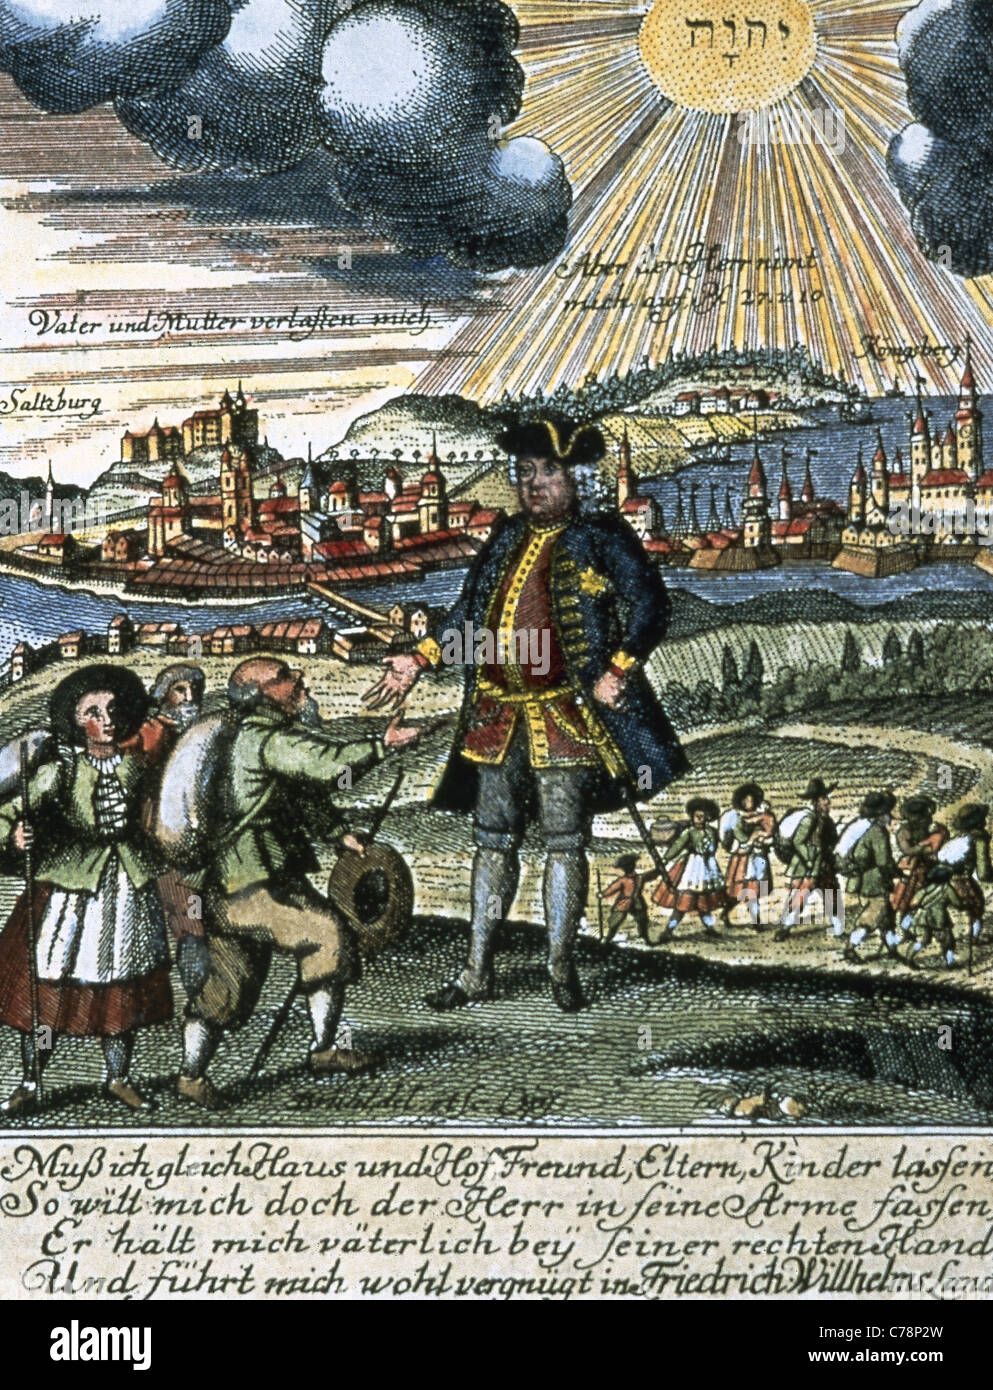 Friedrich Wilhelm i. von Preußen (1688-1740). der König als Patron Beschützer der Protestanten aus Salzburg. Stockfoto